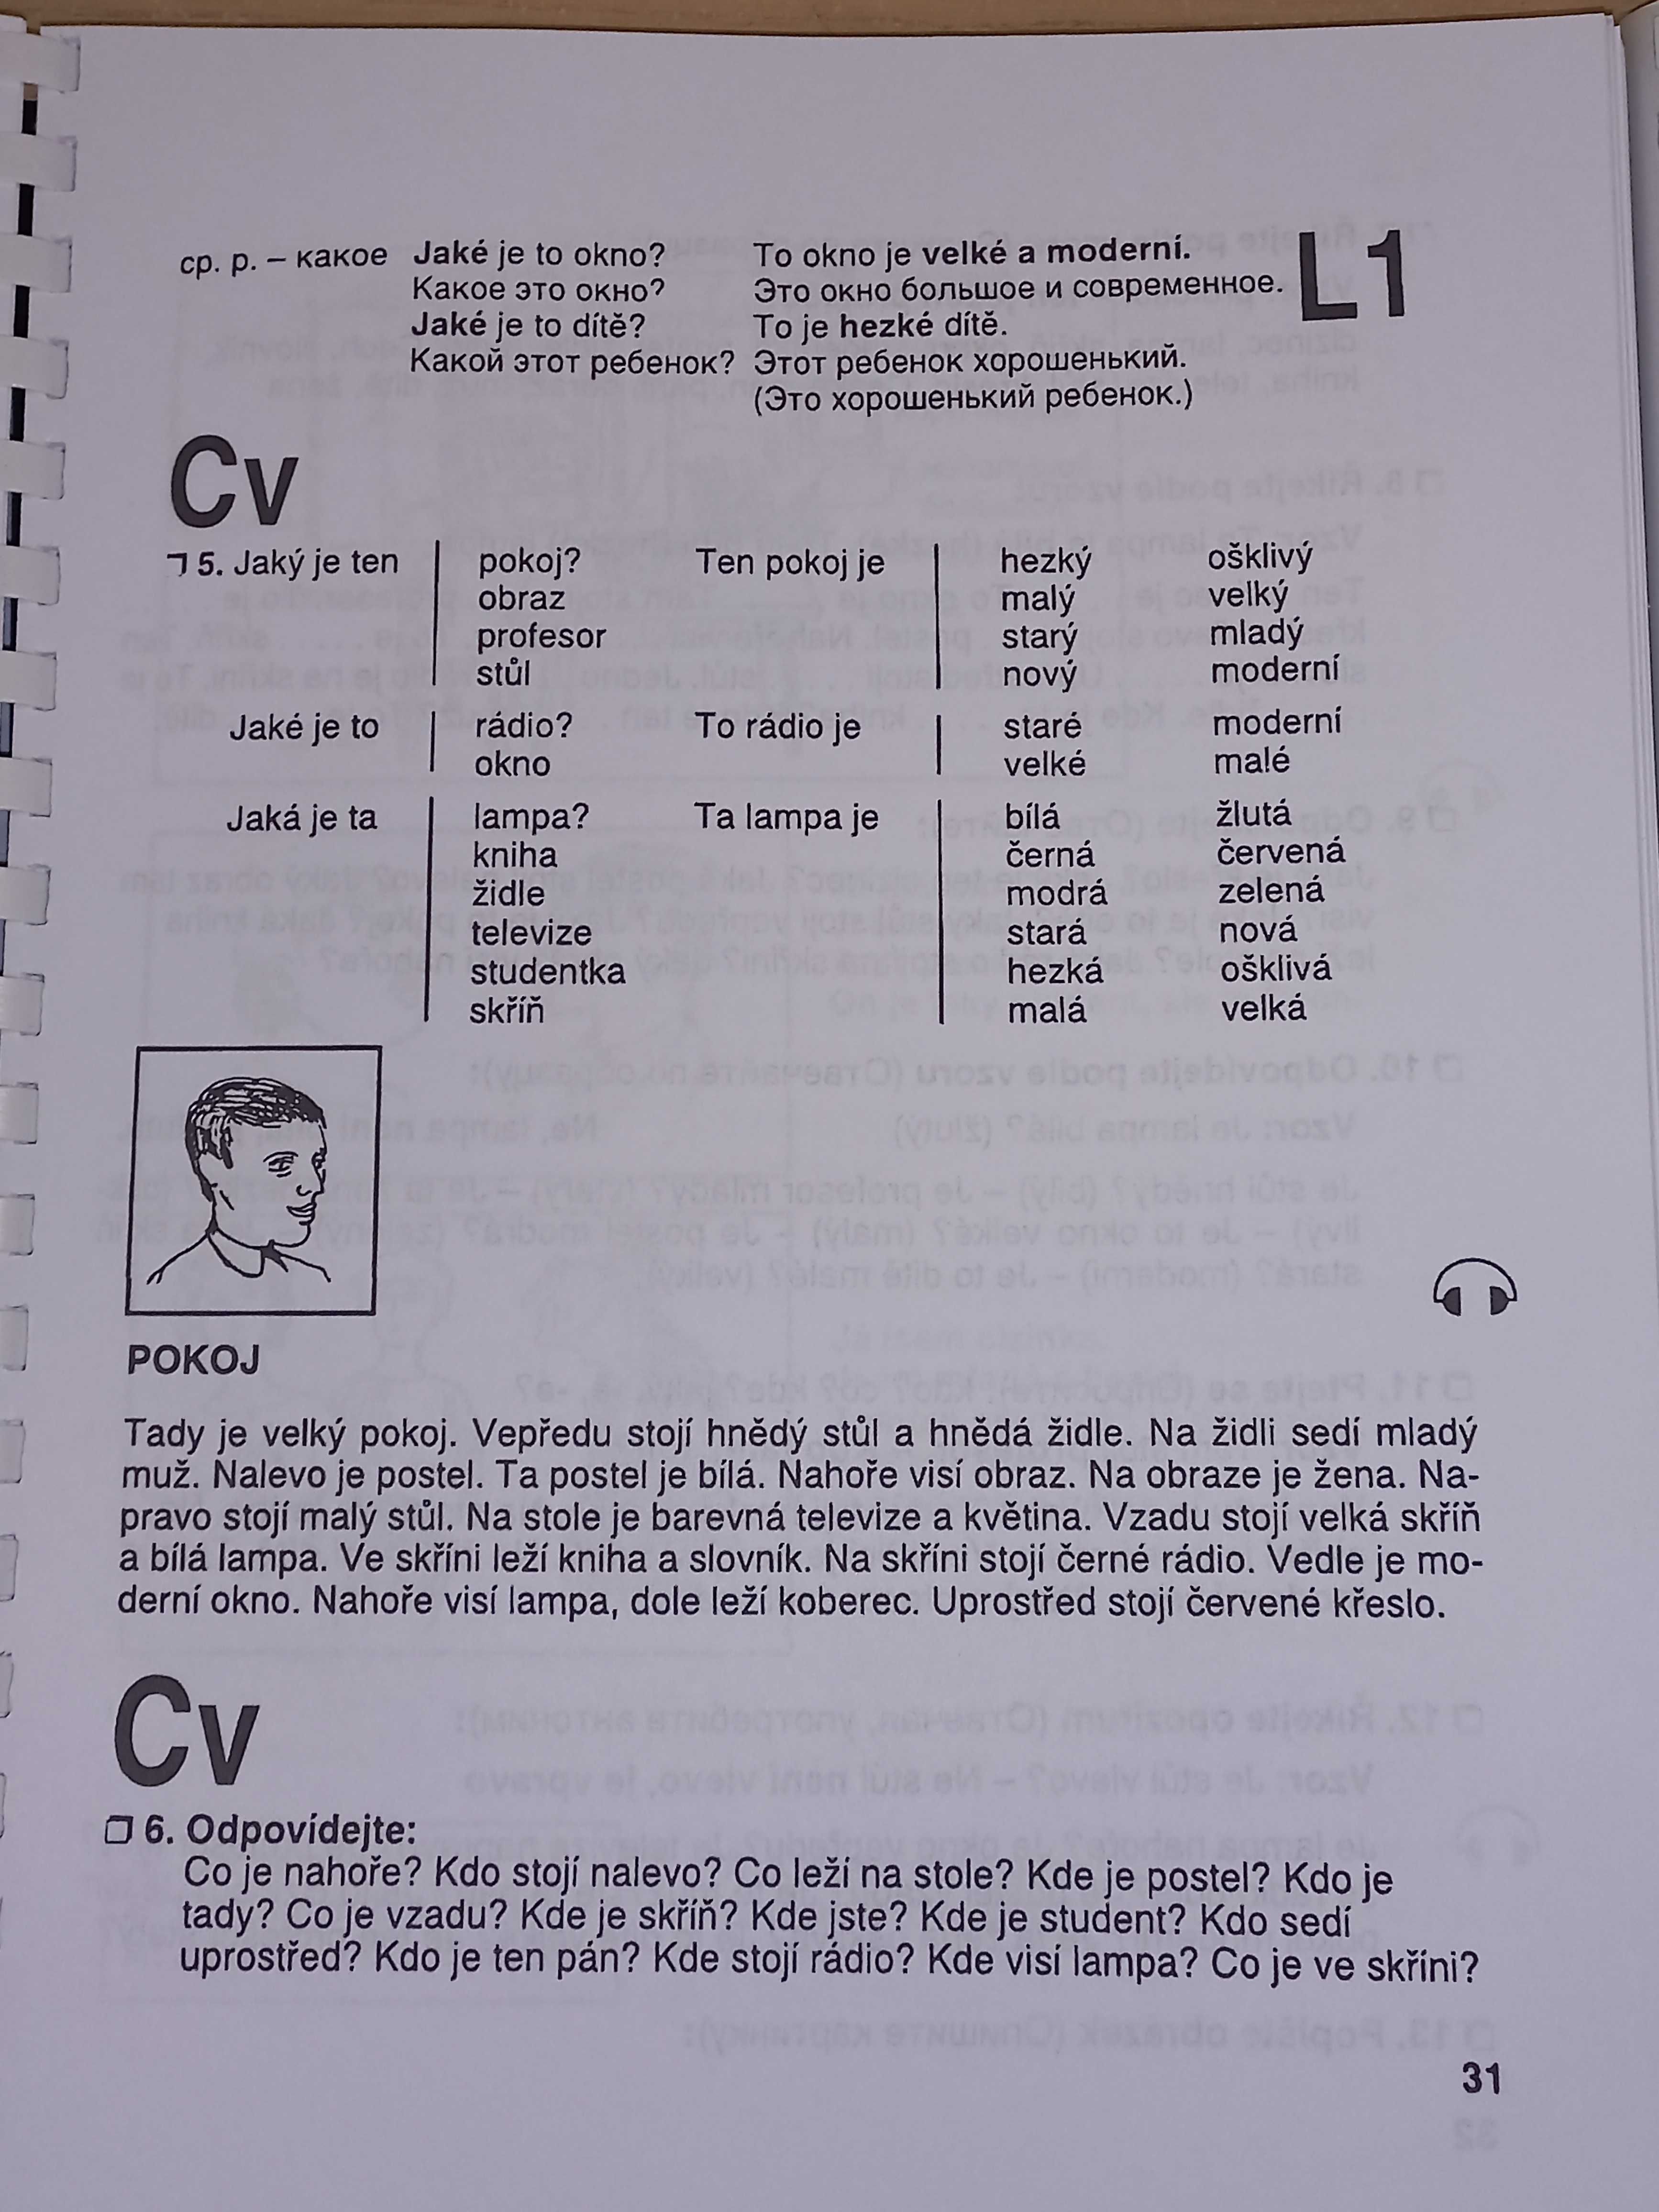 чешский язык хороший учебник самоучитель грамматика